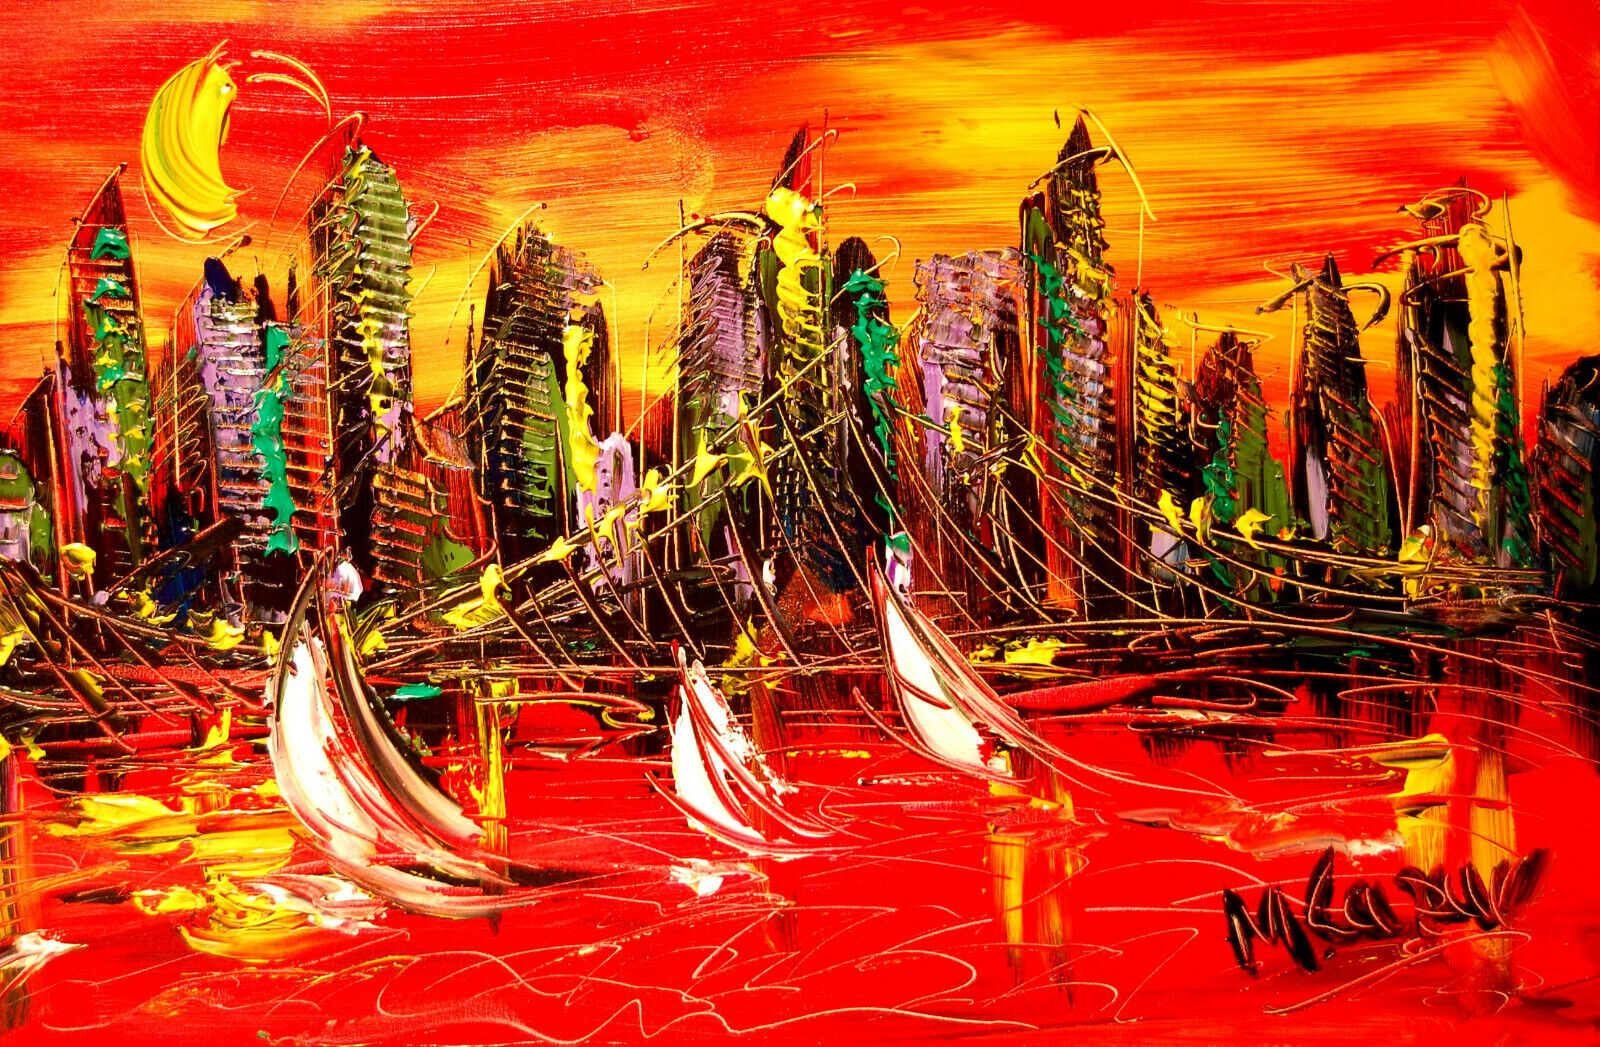 City For You Original Painting   Canvas   Expressionist  Impasto Original  Huu80